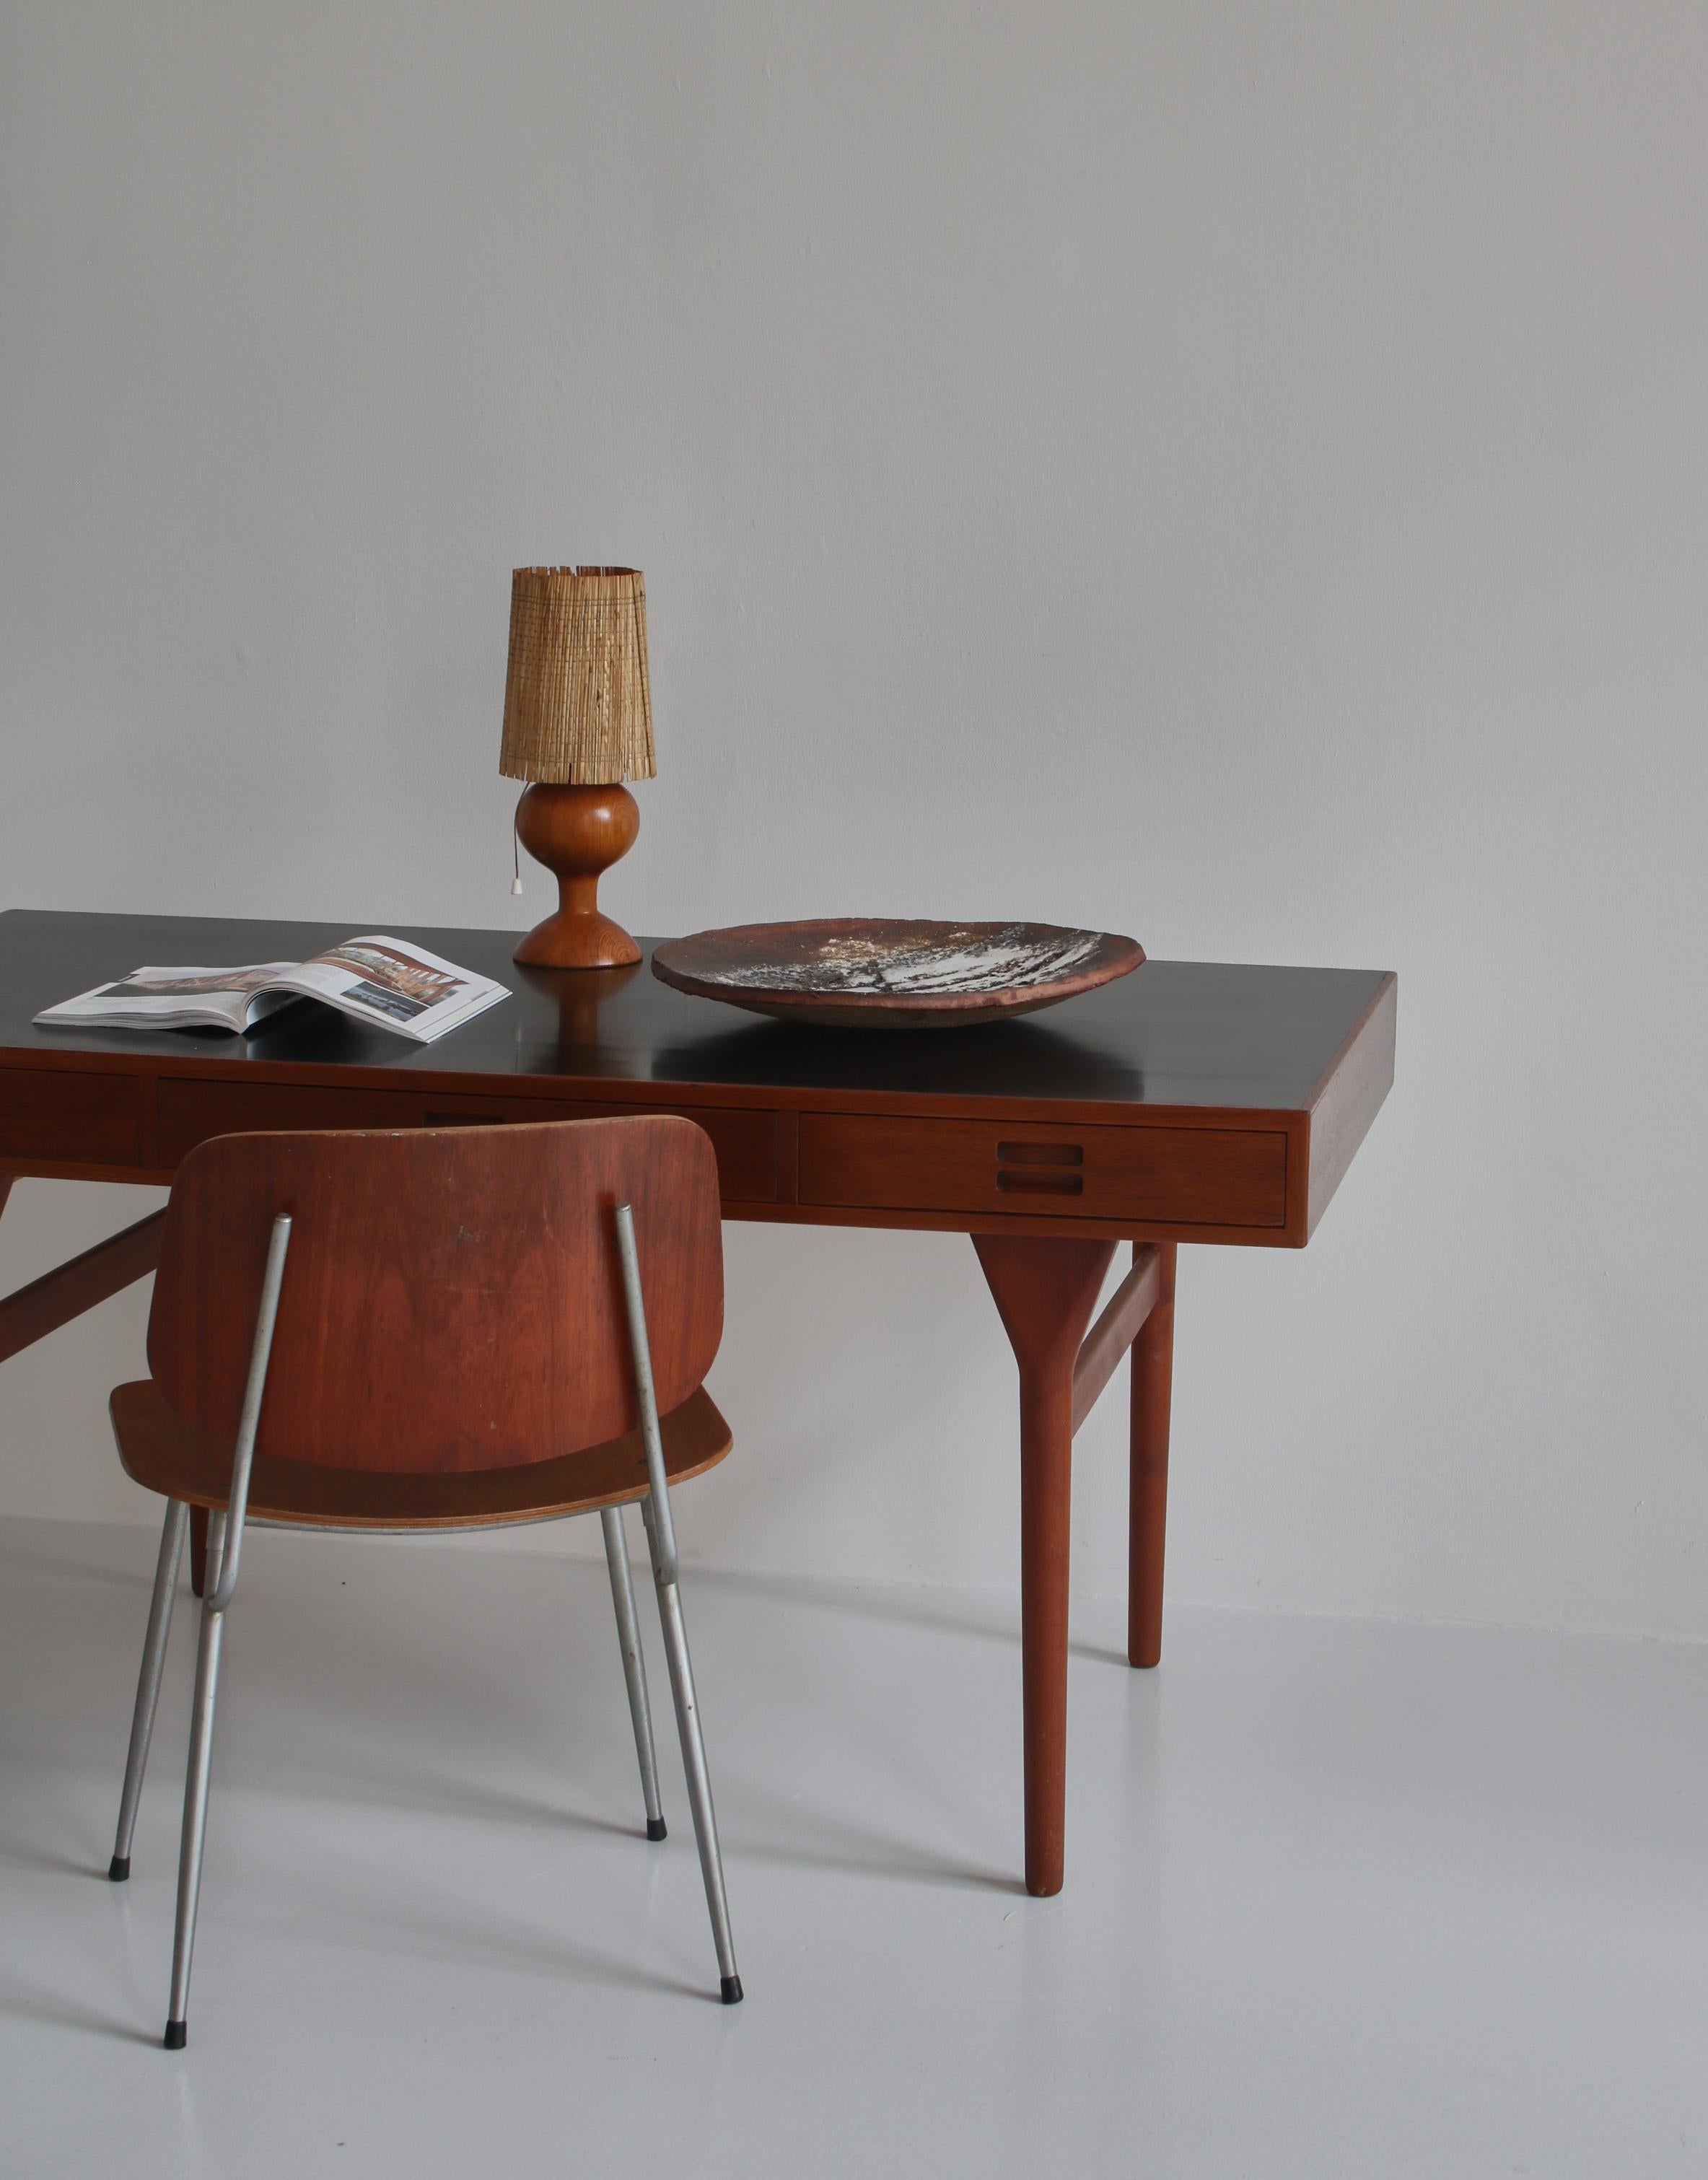 Große, einzigartige Tischschale aus Steingut, handgefertigt vom dänischen Künstler Ole Bjørn Krüger (1922-2007). Hergestellt in den 1960er Jahren in seiner eigenen Werkstatt. Glasiertes Feinsteinzeug mit schönen Kontrasten in Erdfarben.